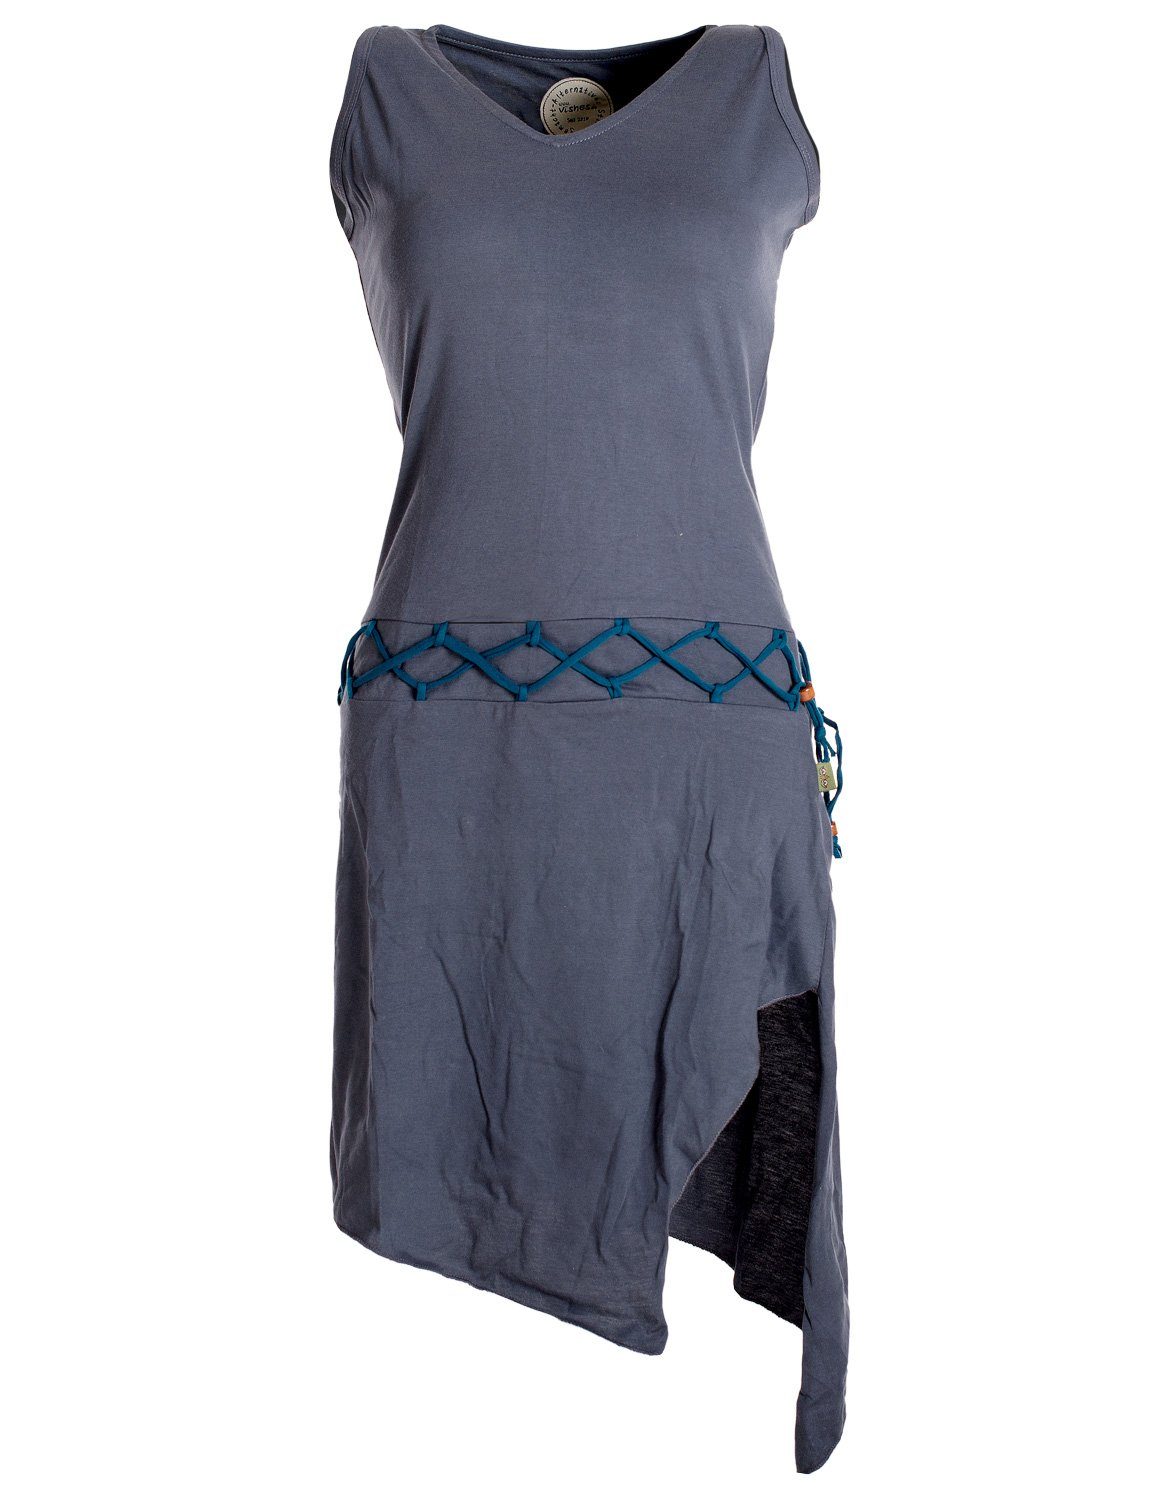 Vishes Sommerkleid Ärmelloses Kleid Boho, grau Elfen Gürtel-Schnürung Style Beinausschnitt Goa Hippie, asymmetrisch